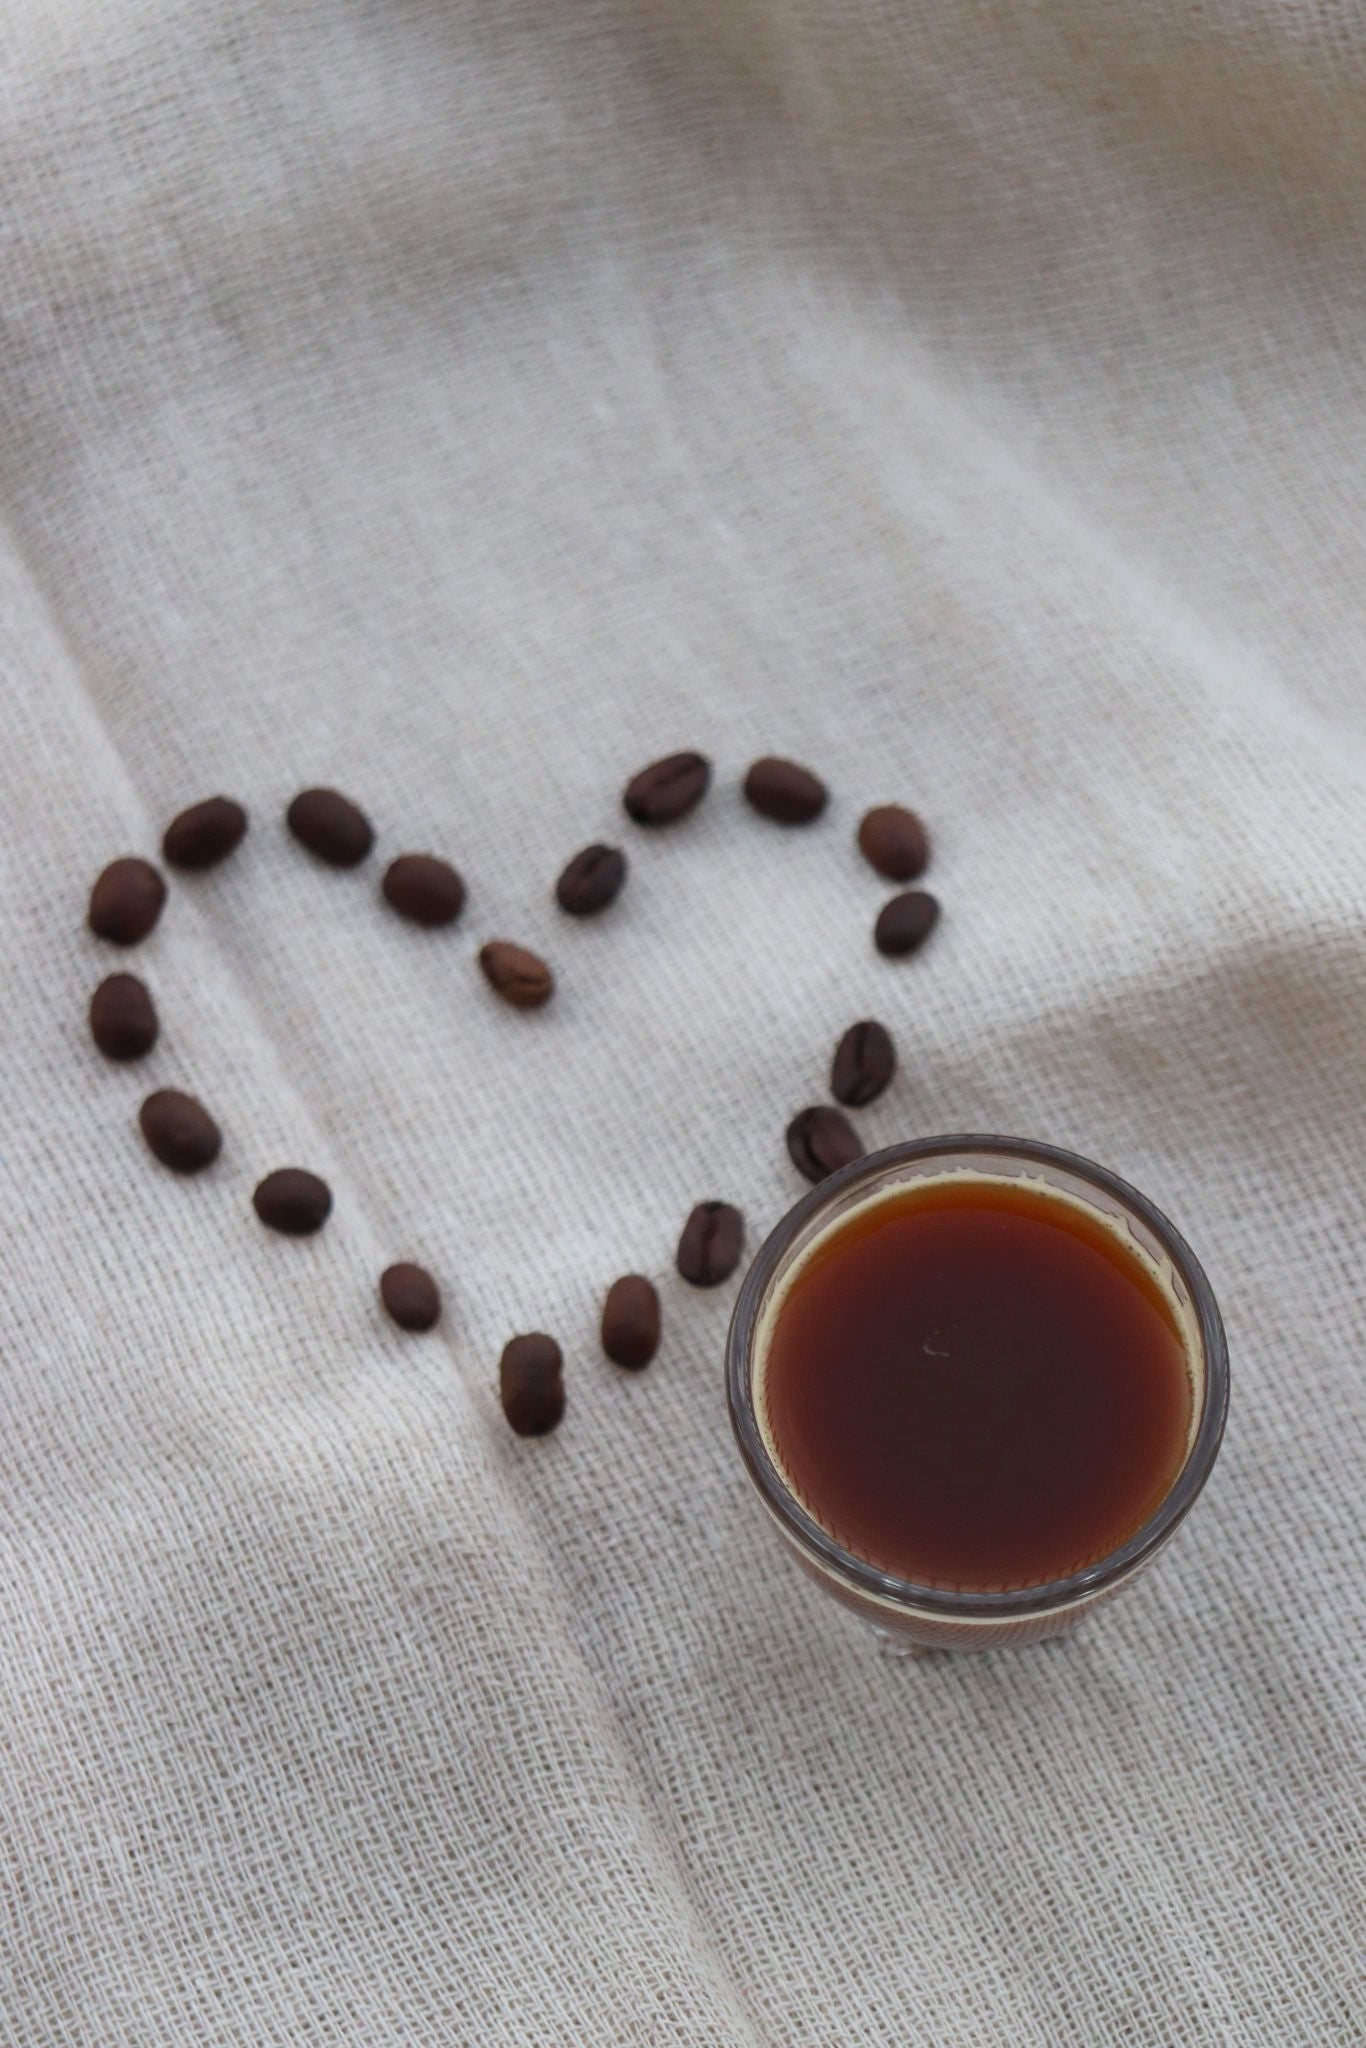 Baking Soda Acid Coffee: Neutralization Explained